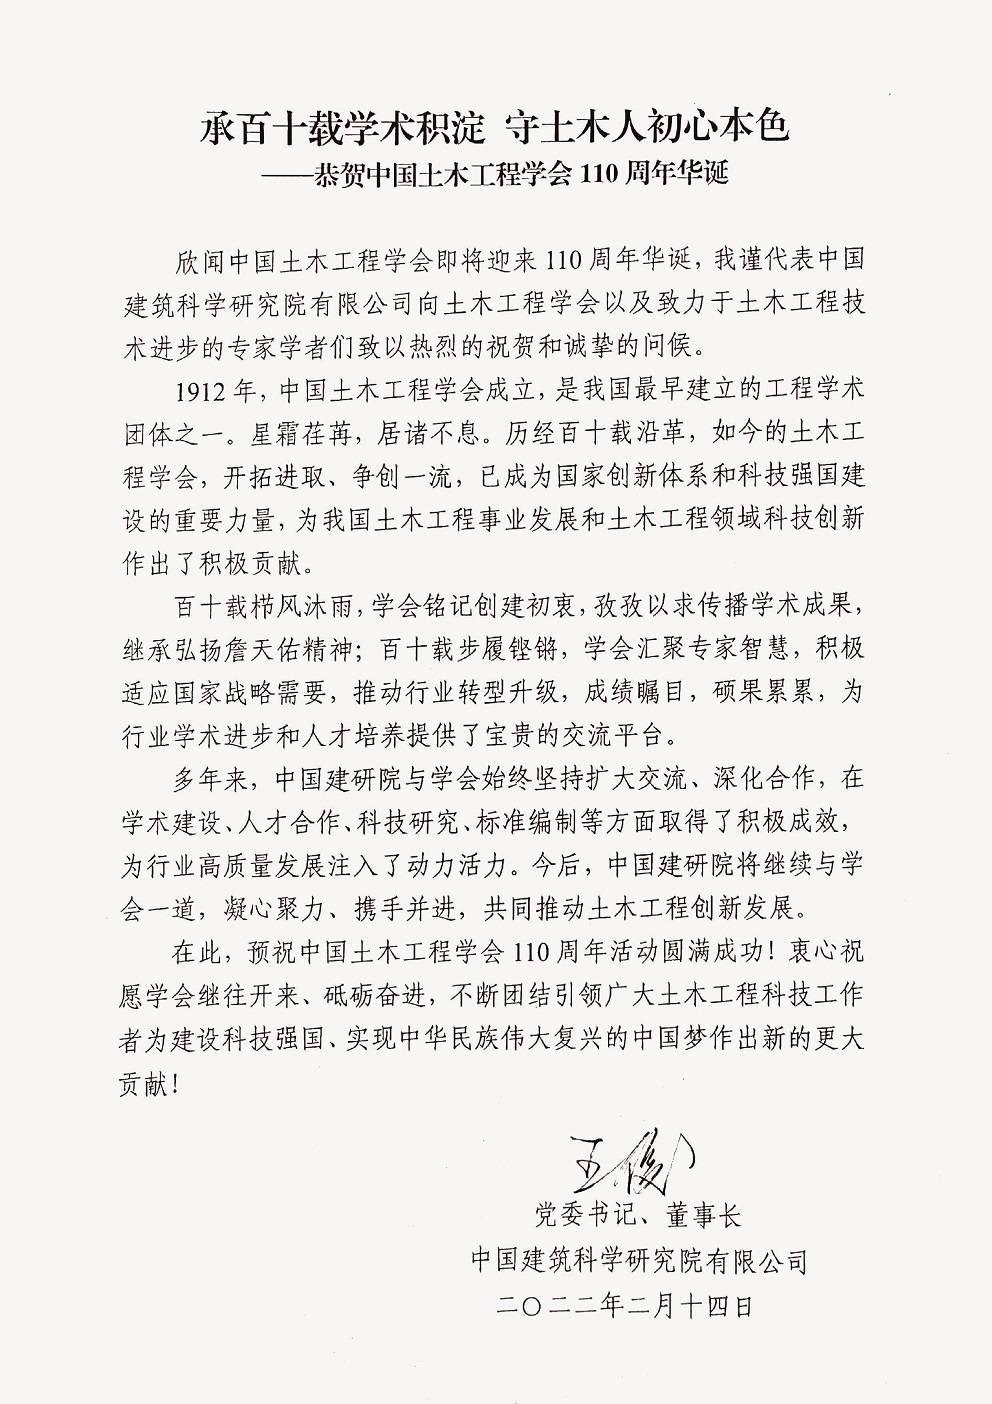 中国建筑科学研究院有限公司党委书记、董事长、学会第十届理事会副理事长王俊贺信